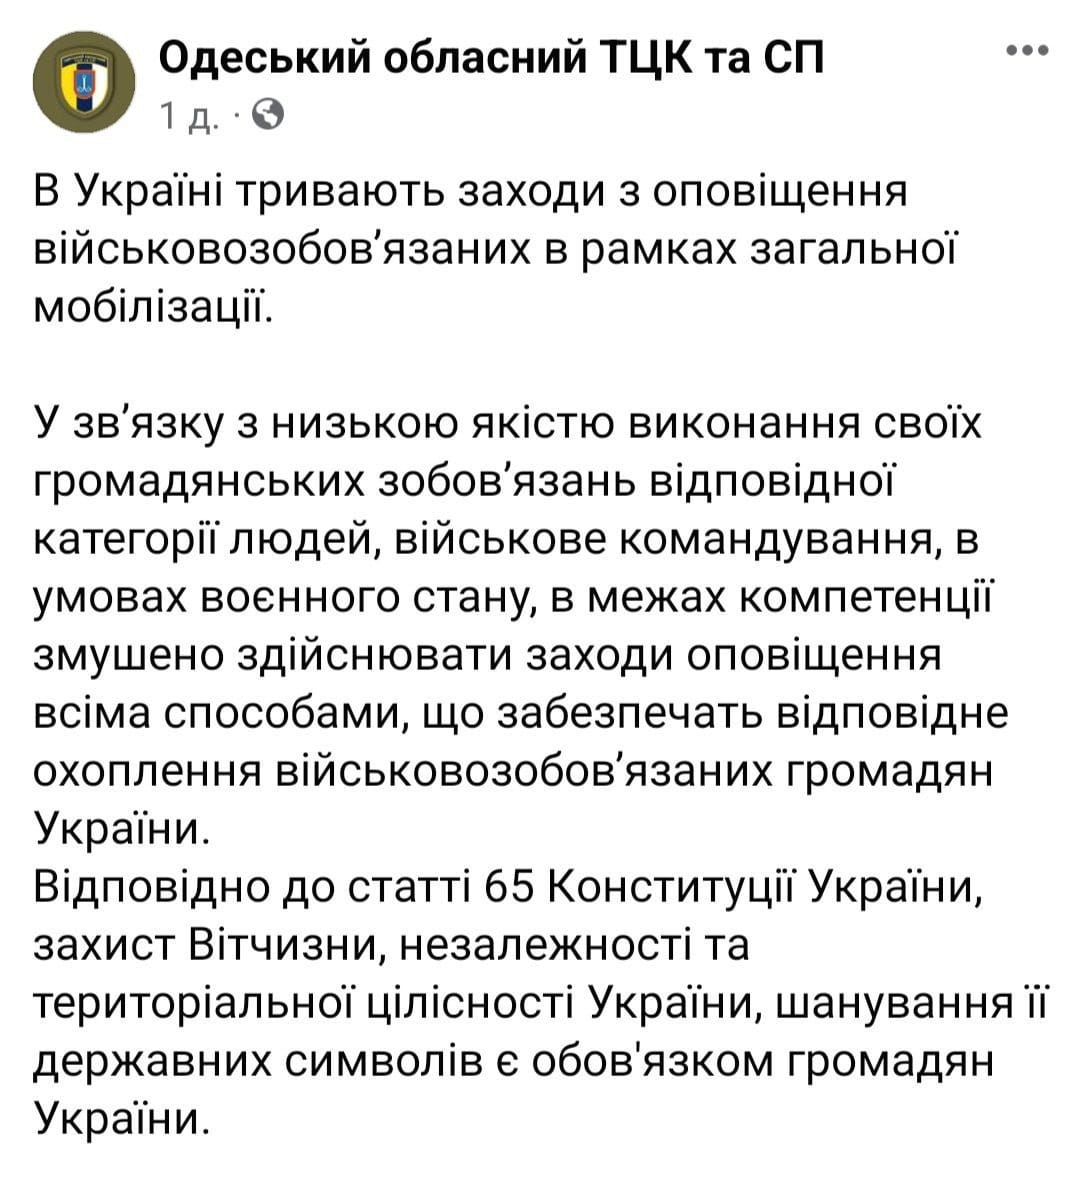 В Одеському обласному ТЦК прокоментували ситуацію, щодо рейдів в громадському транспорті